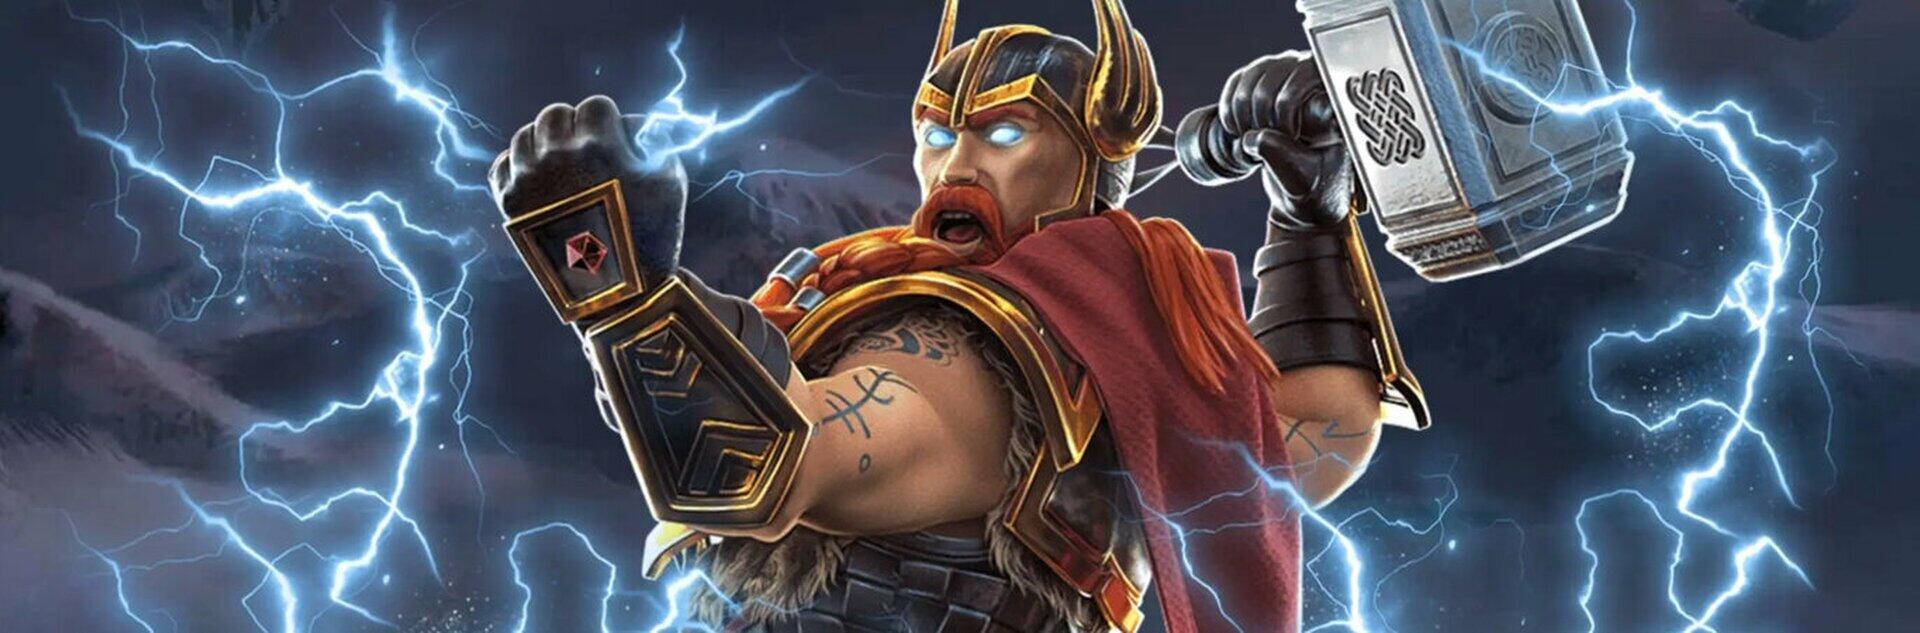 Thor's Vengeance Slot